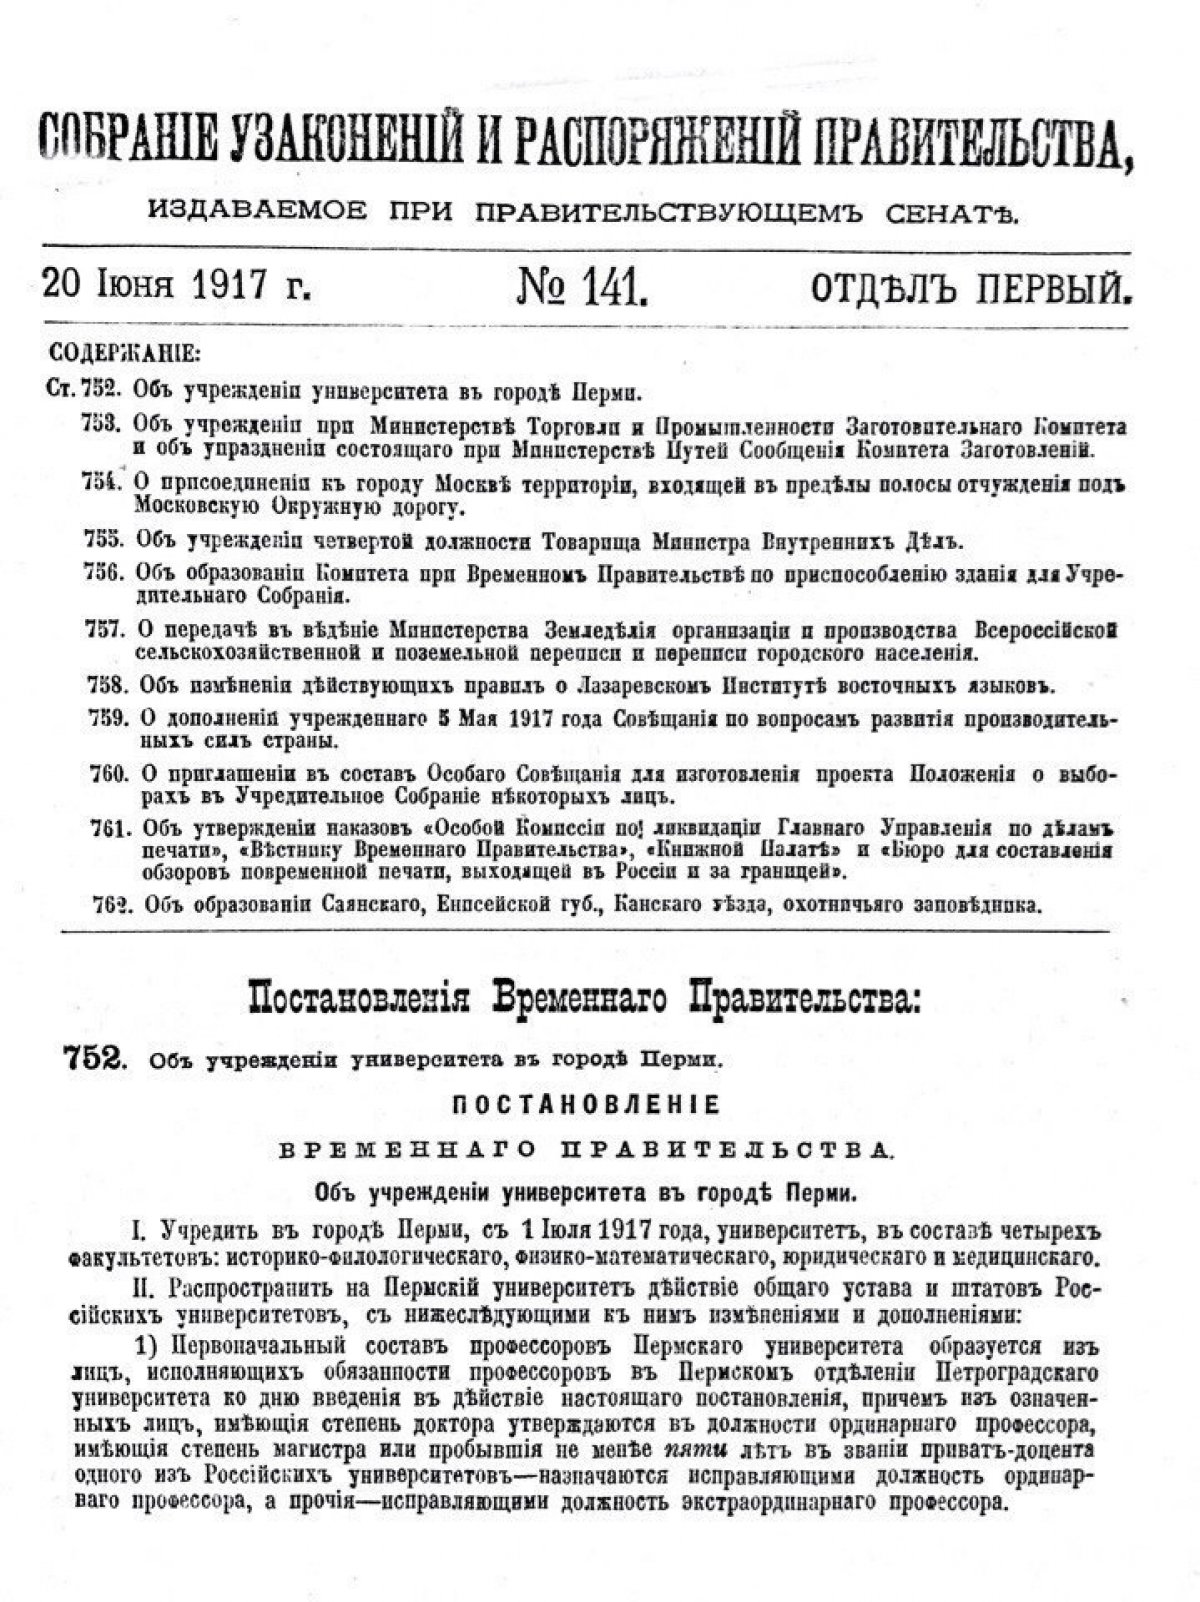 1 (14) июля 1917 года, 101 год назад, наш вуз получил самостоятельность от Петроградского университета и своё современное название